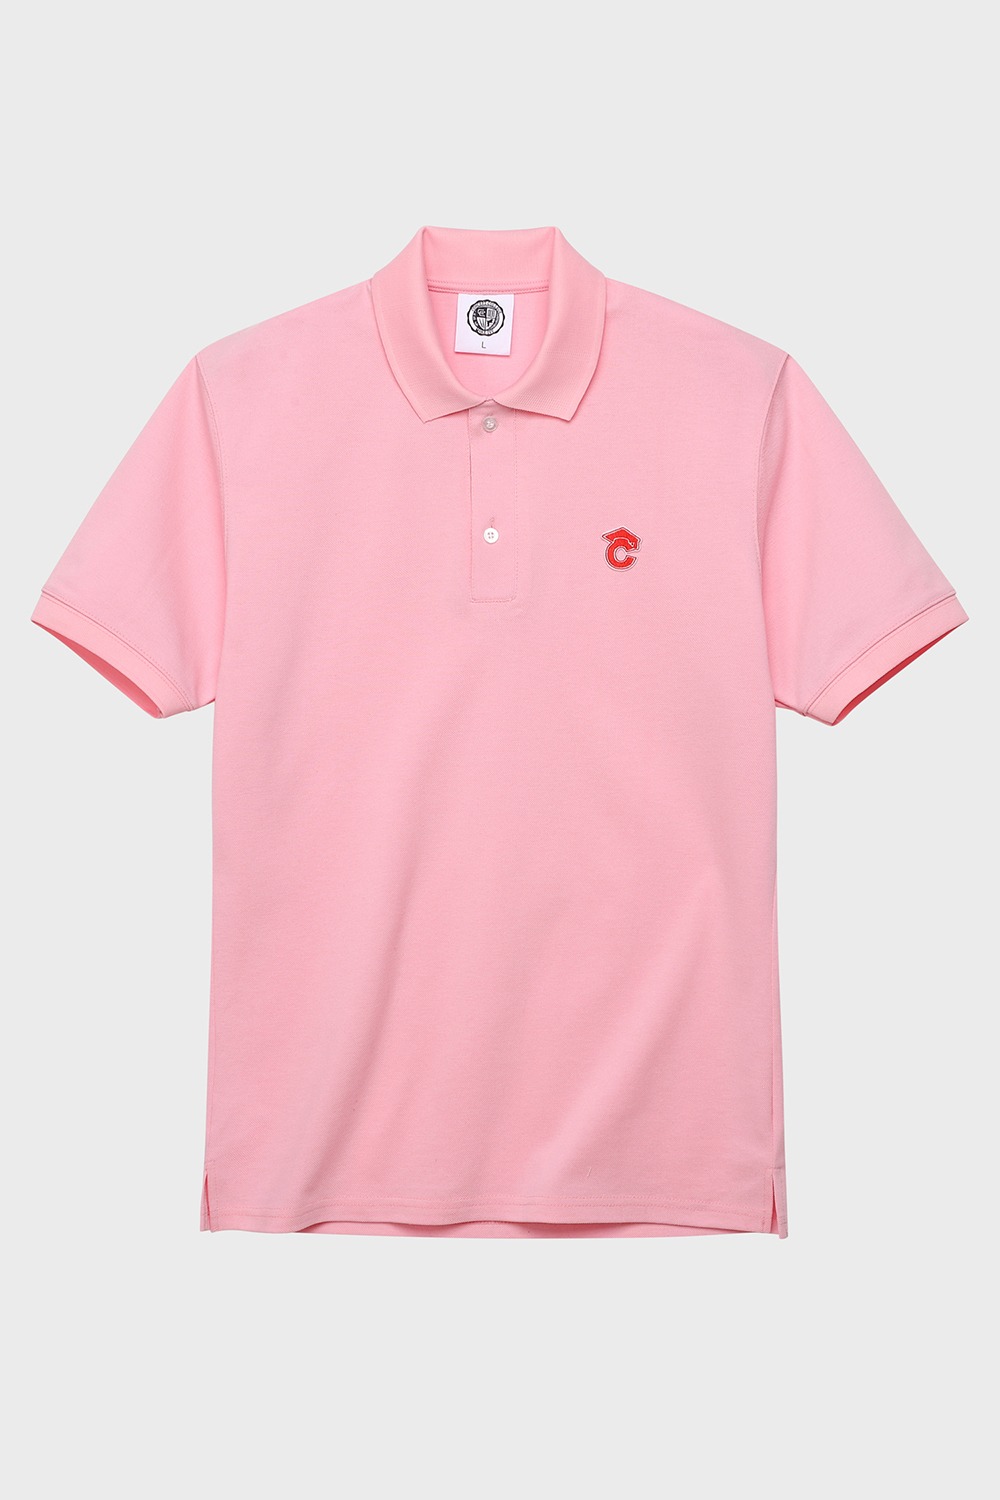 Small graduation cap patch Unisex pique polo shirt (Pink) RICHEZ